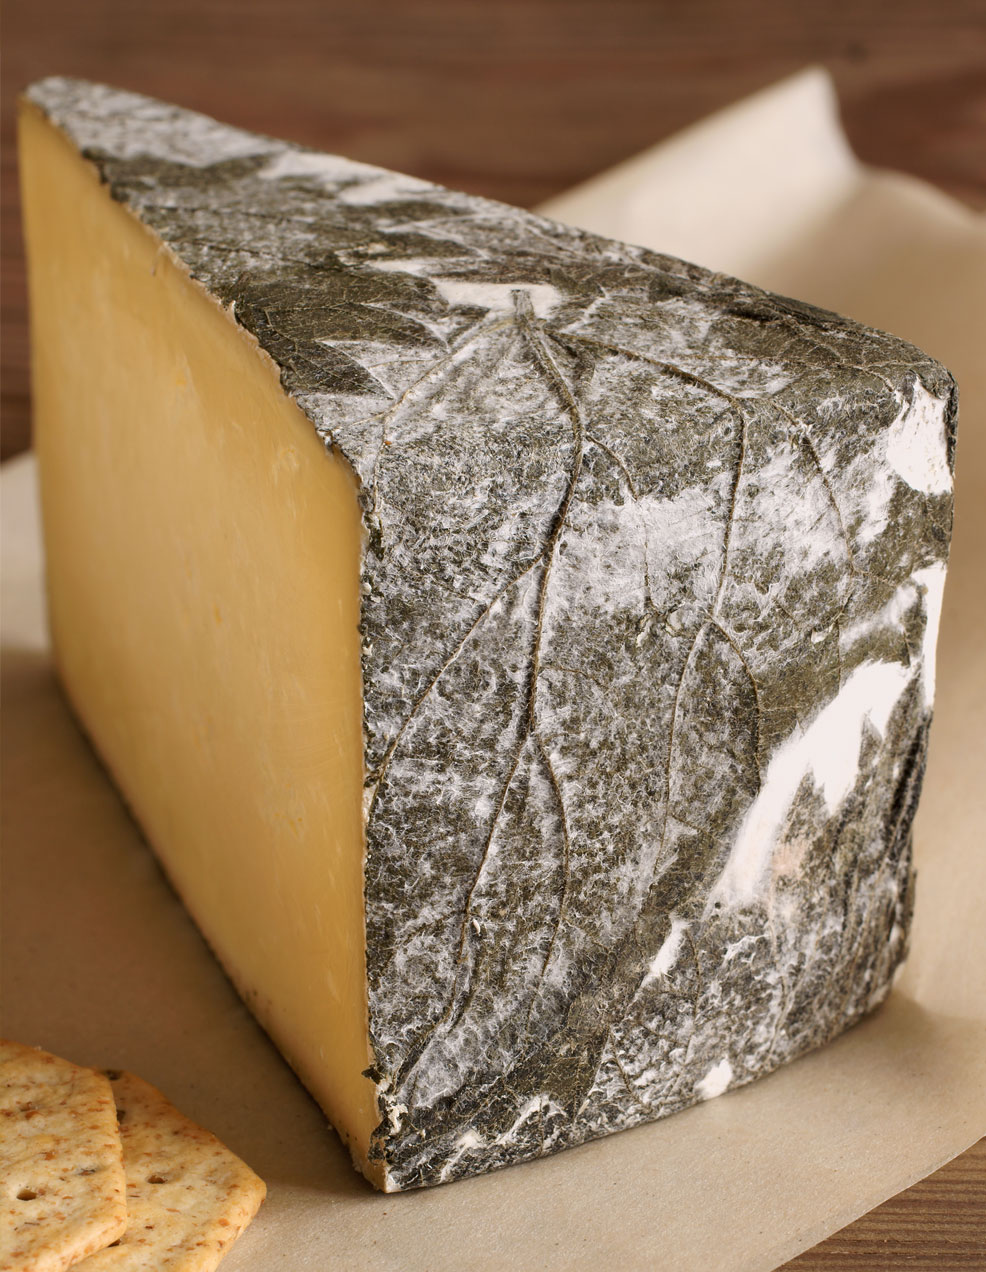 Cornish Yarg cheese